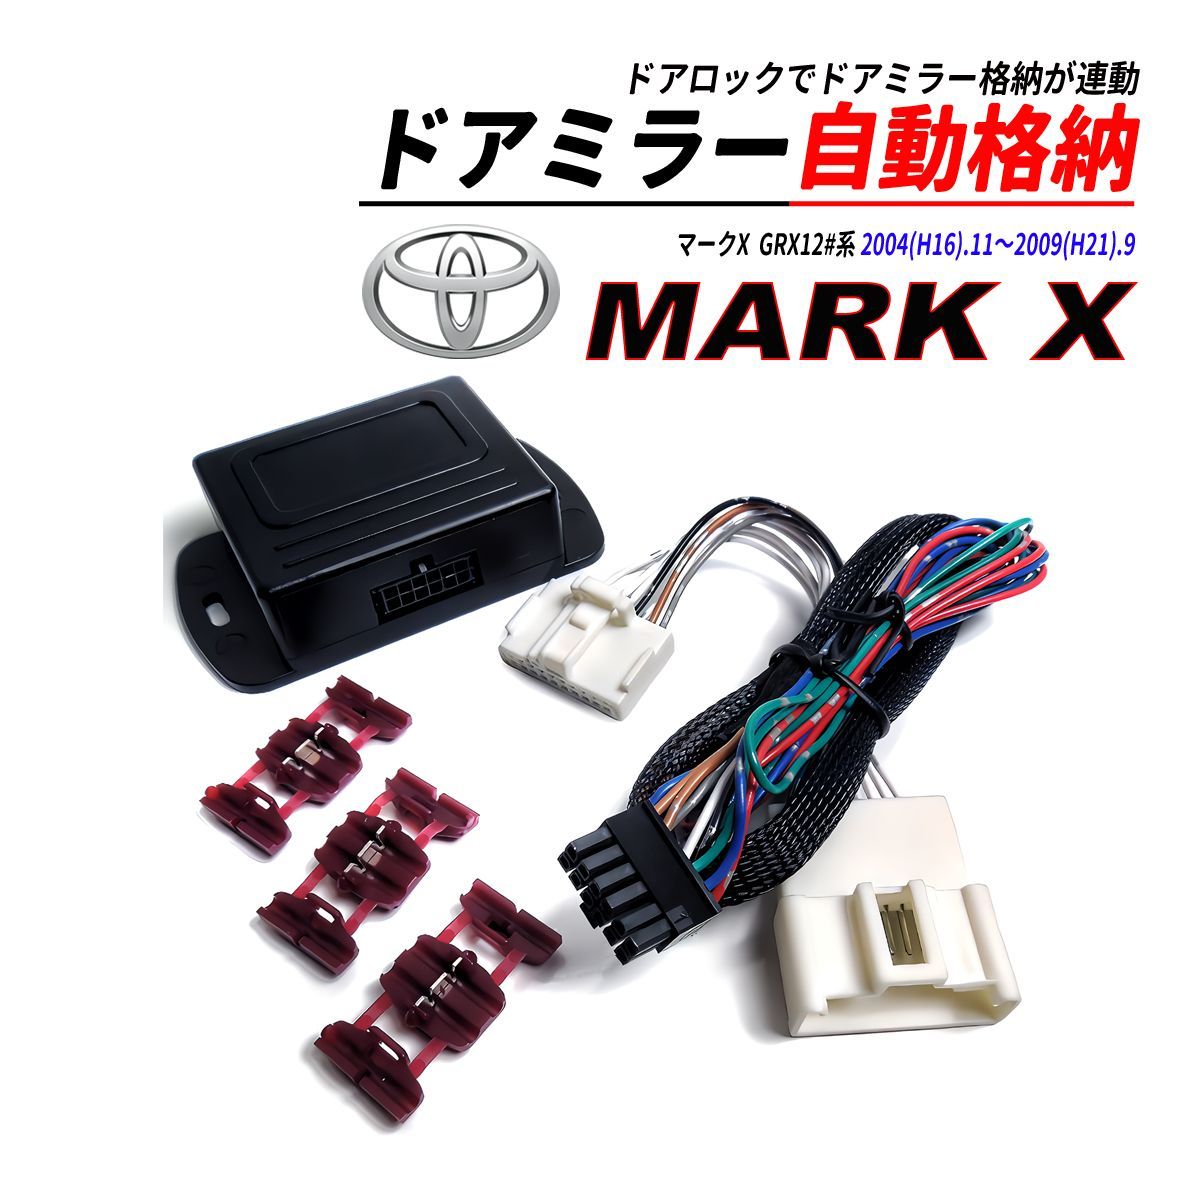 マークX 120系 ドアミラー 自動格納 キット Aタイプ キーレスエントリー対応 - メルカリ